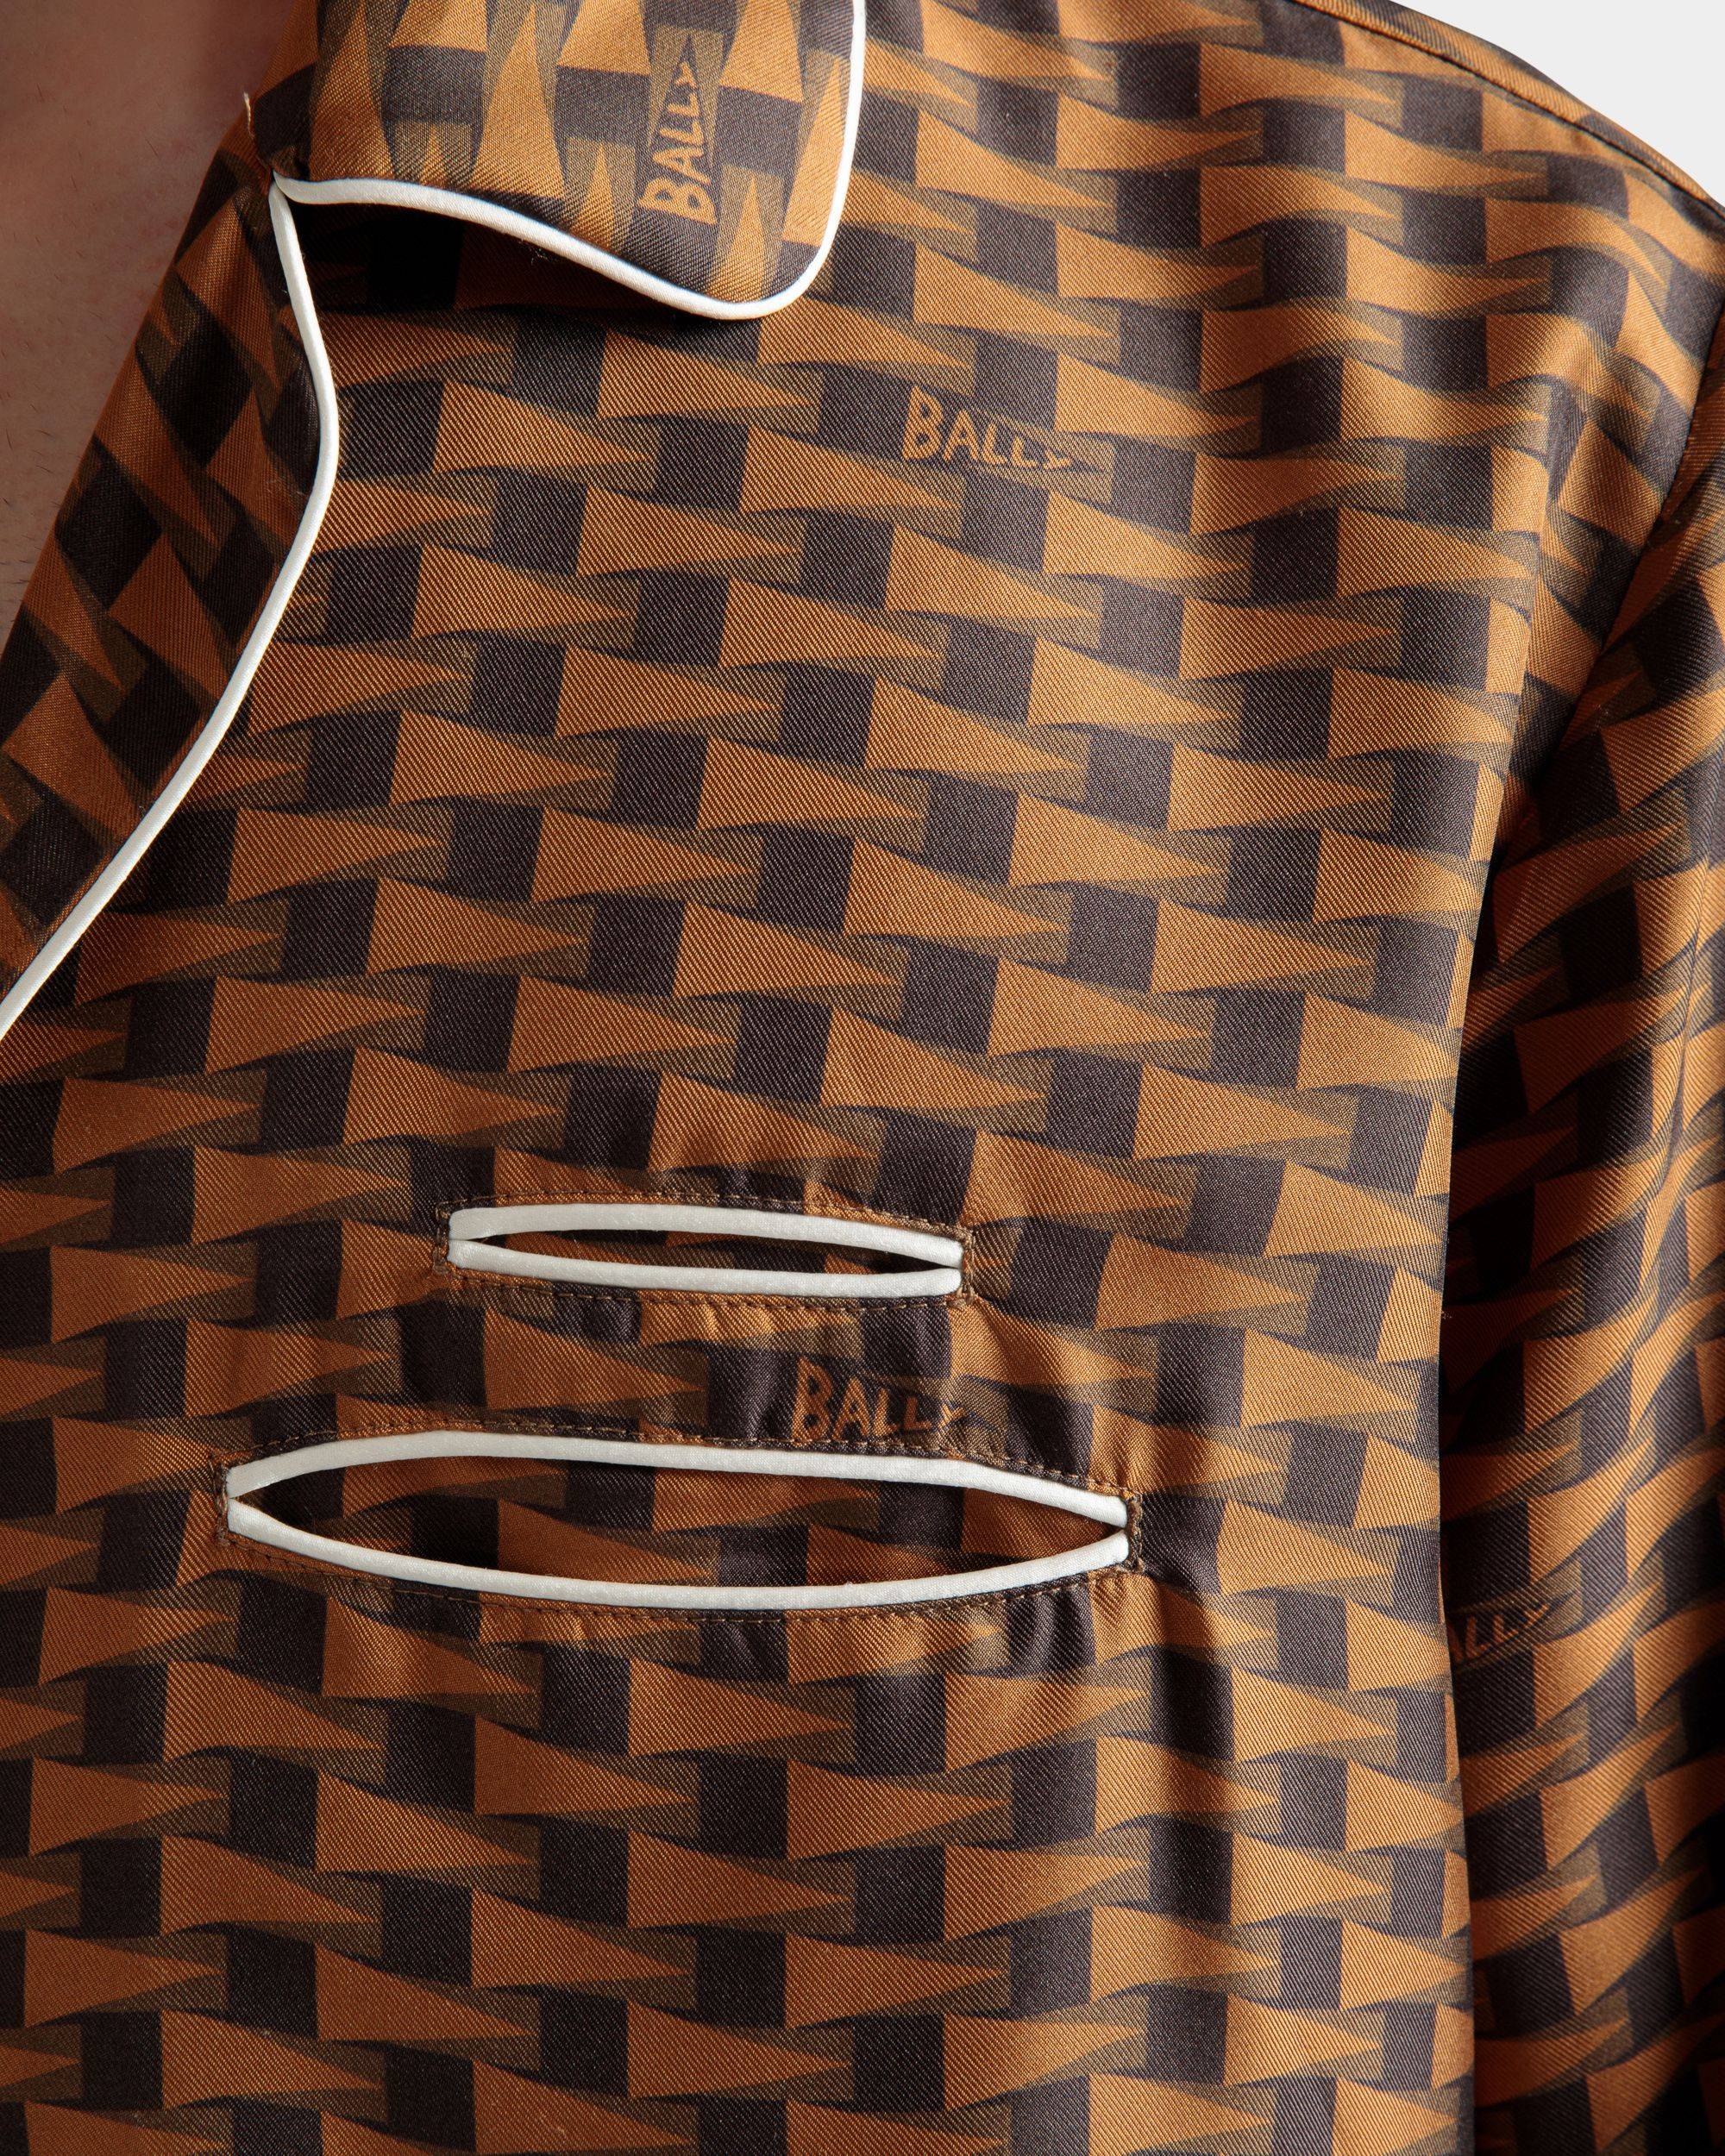 Hemd mit Pennant-Print | Herrenhemd | Braune Seide | Bally | Model getragen Detail